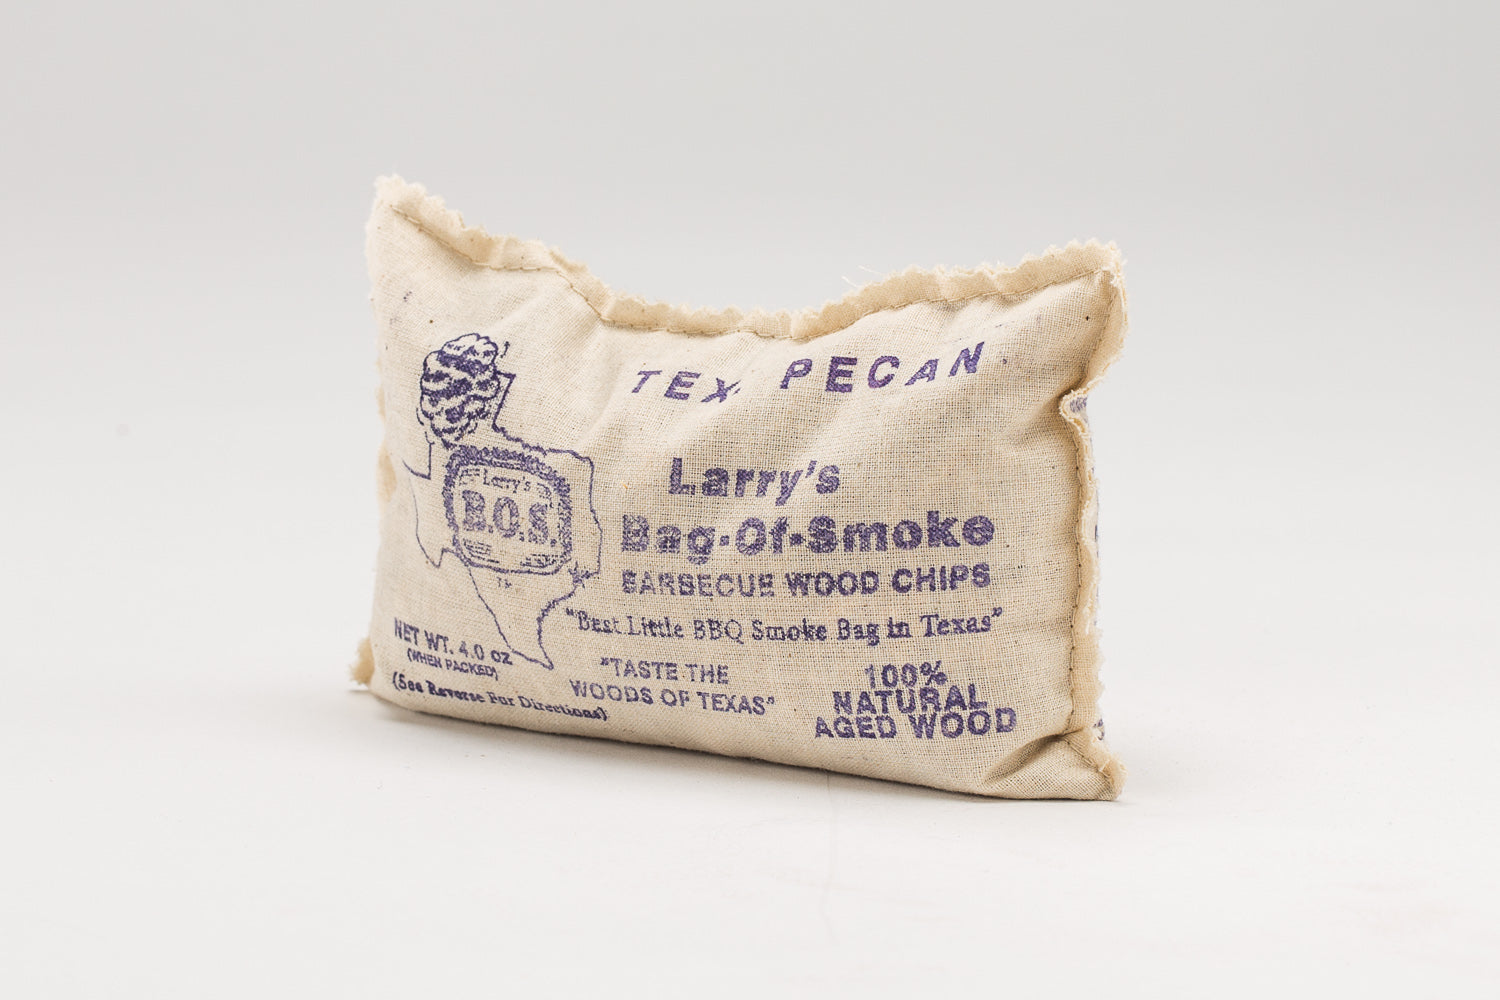 Larrys Bag Of Smoke